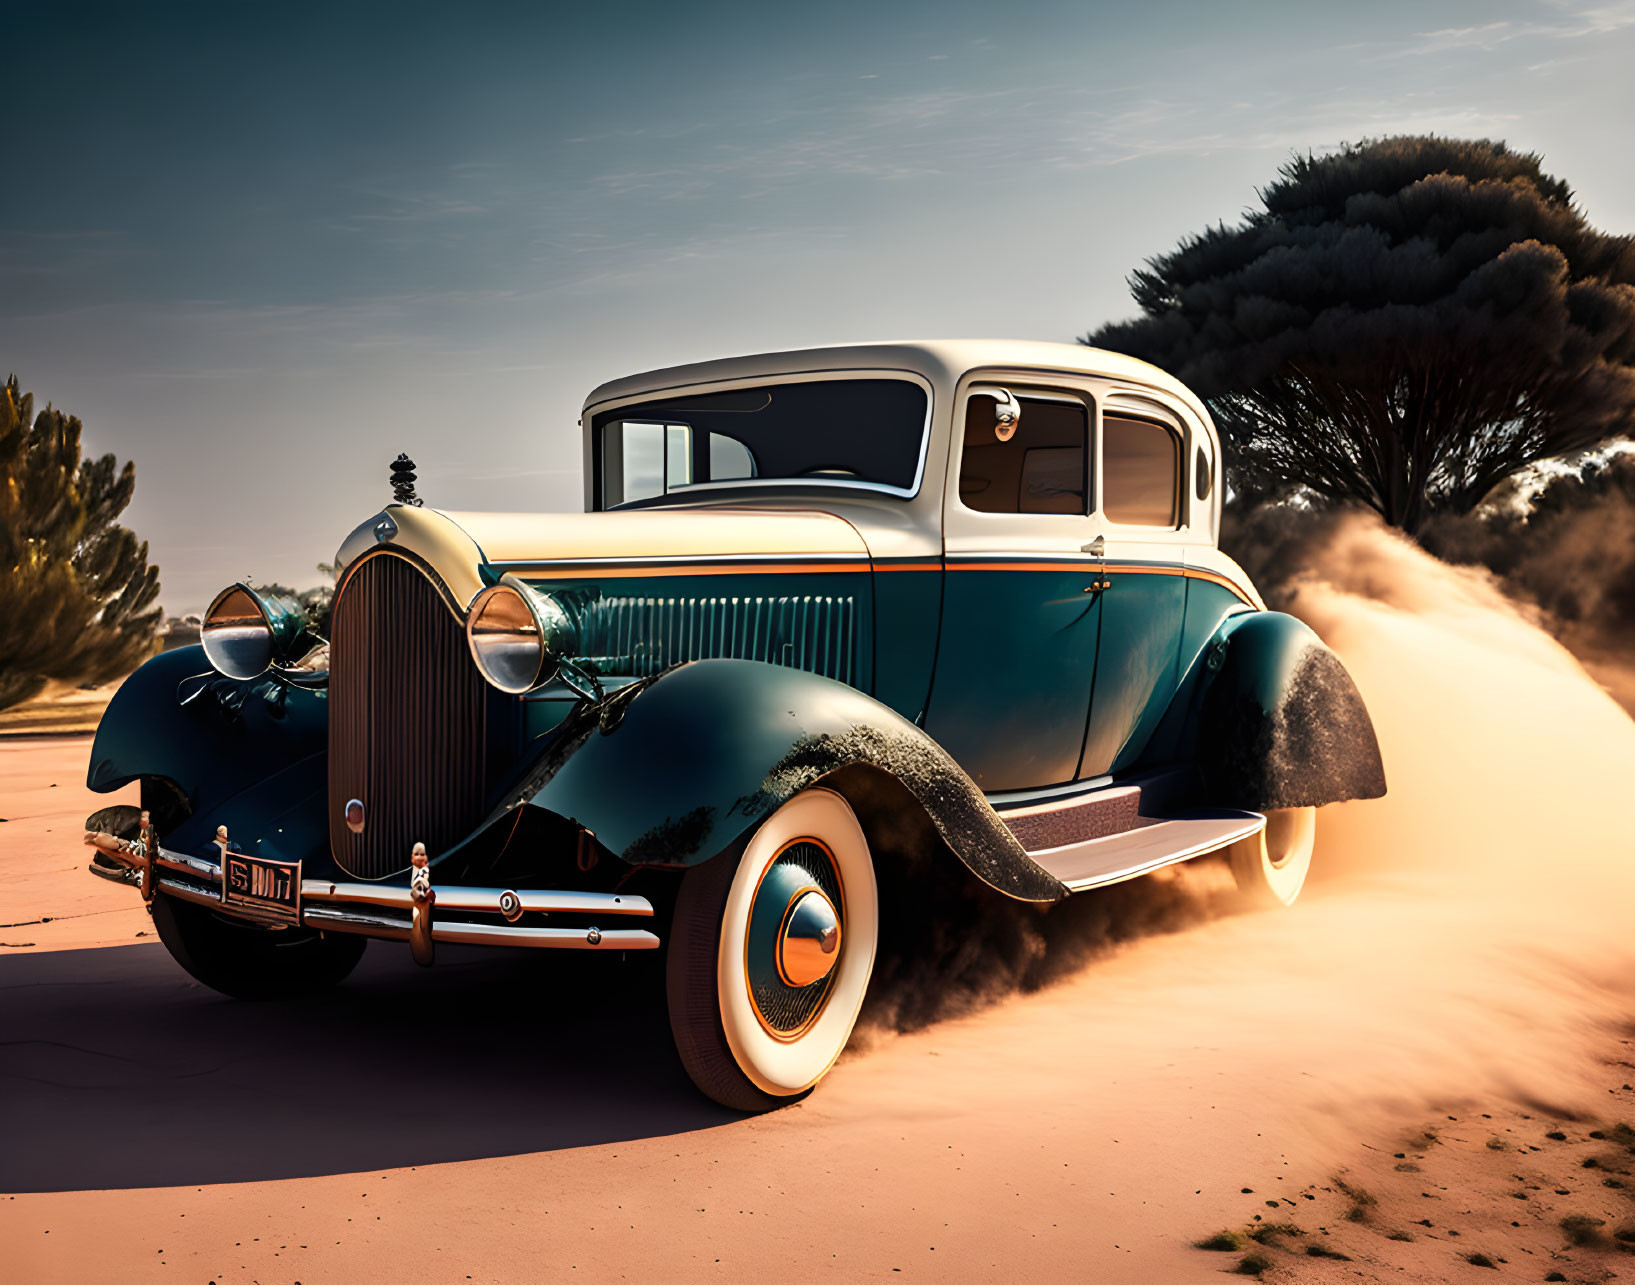 Vintage Black and Teal Classic Car in Desert Landscape